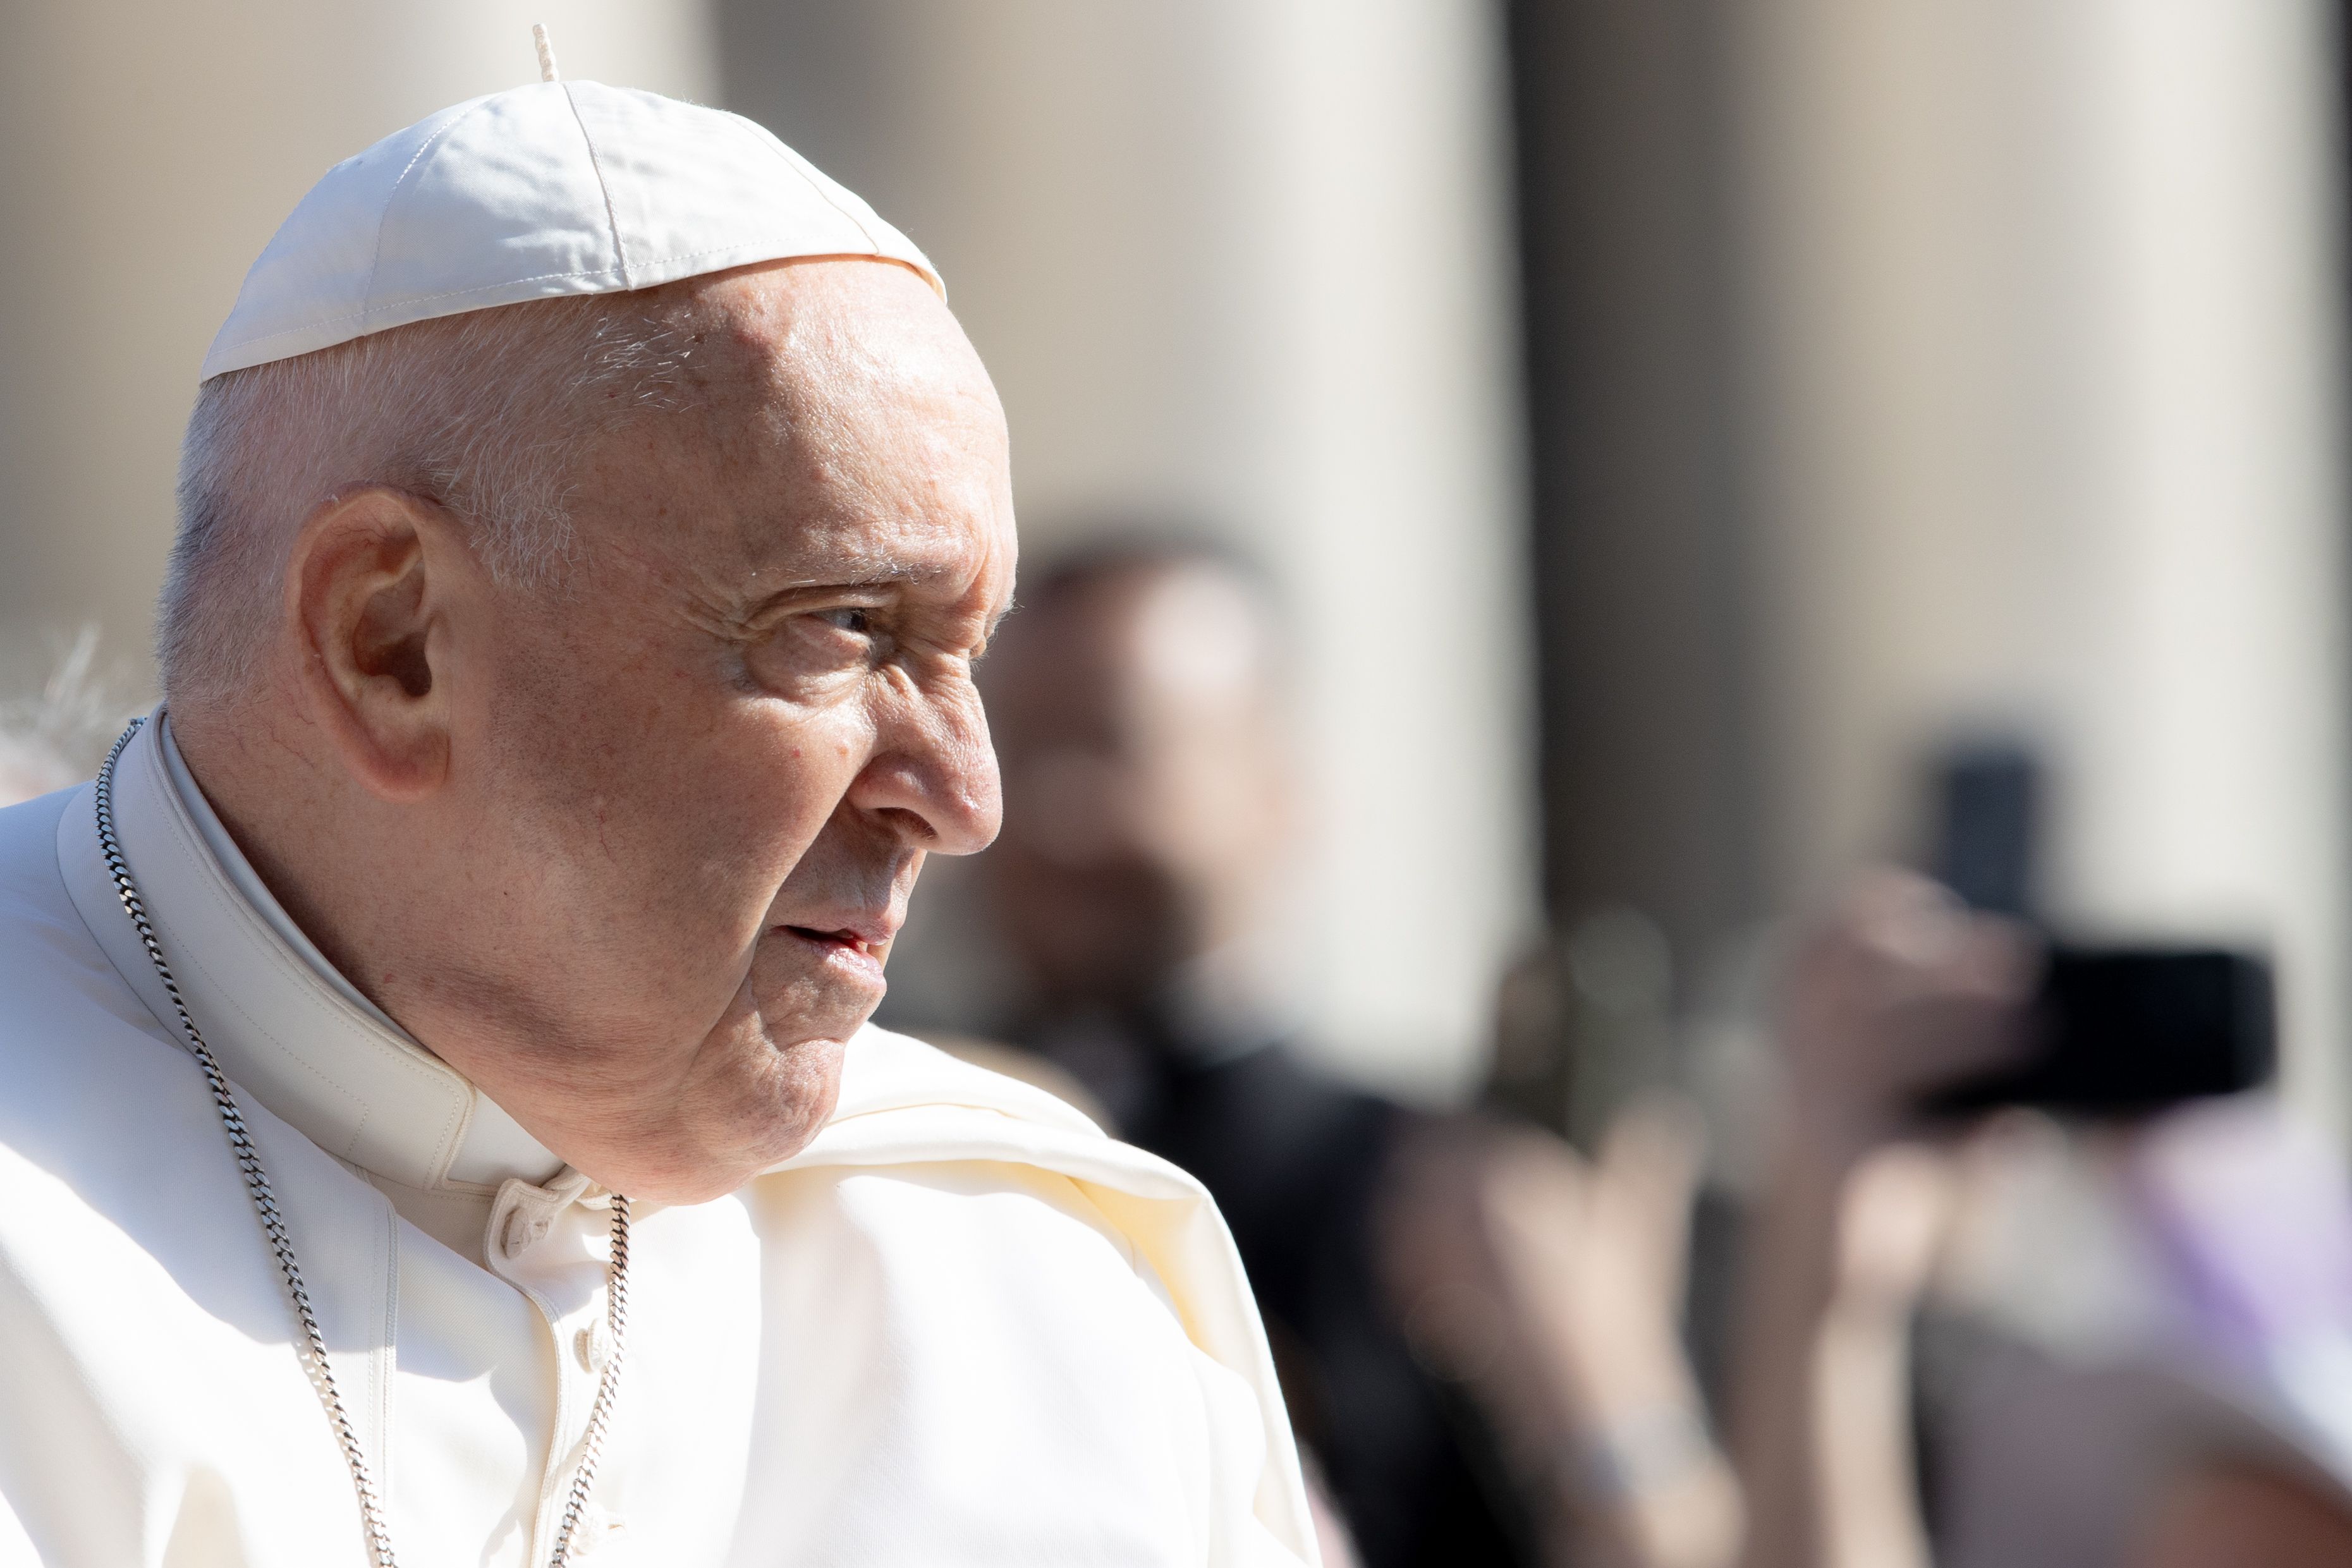 Pope Francis has a fever, Vatican spokesman confirms